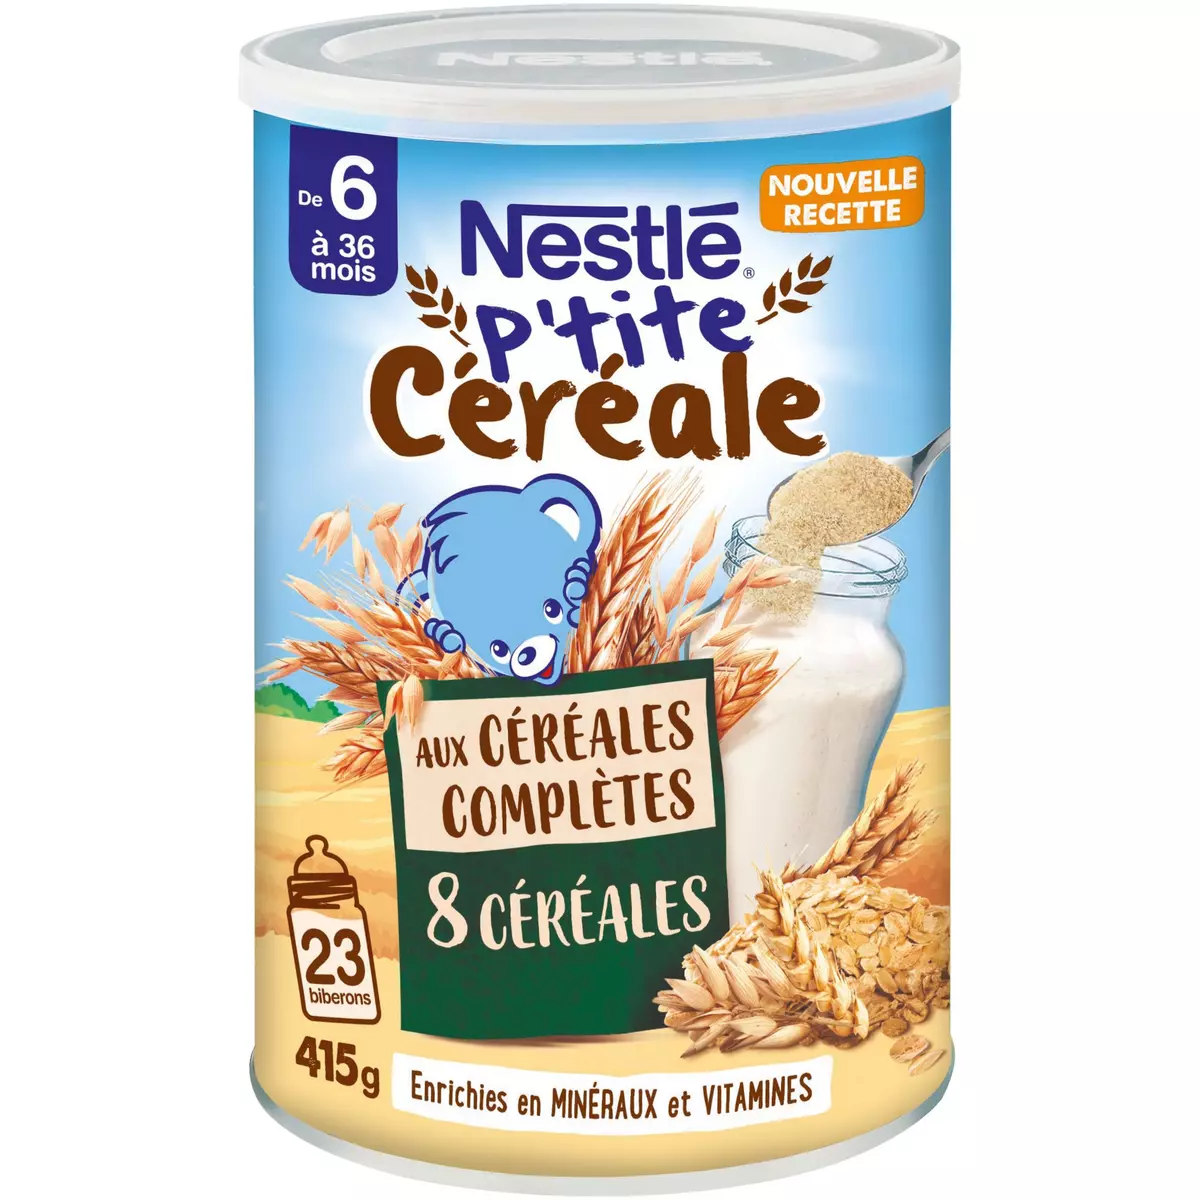 NESTLE P'tite céréale aux céréales complètes 8 céréales en poudre dès 6 mois 415g